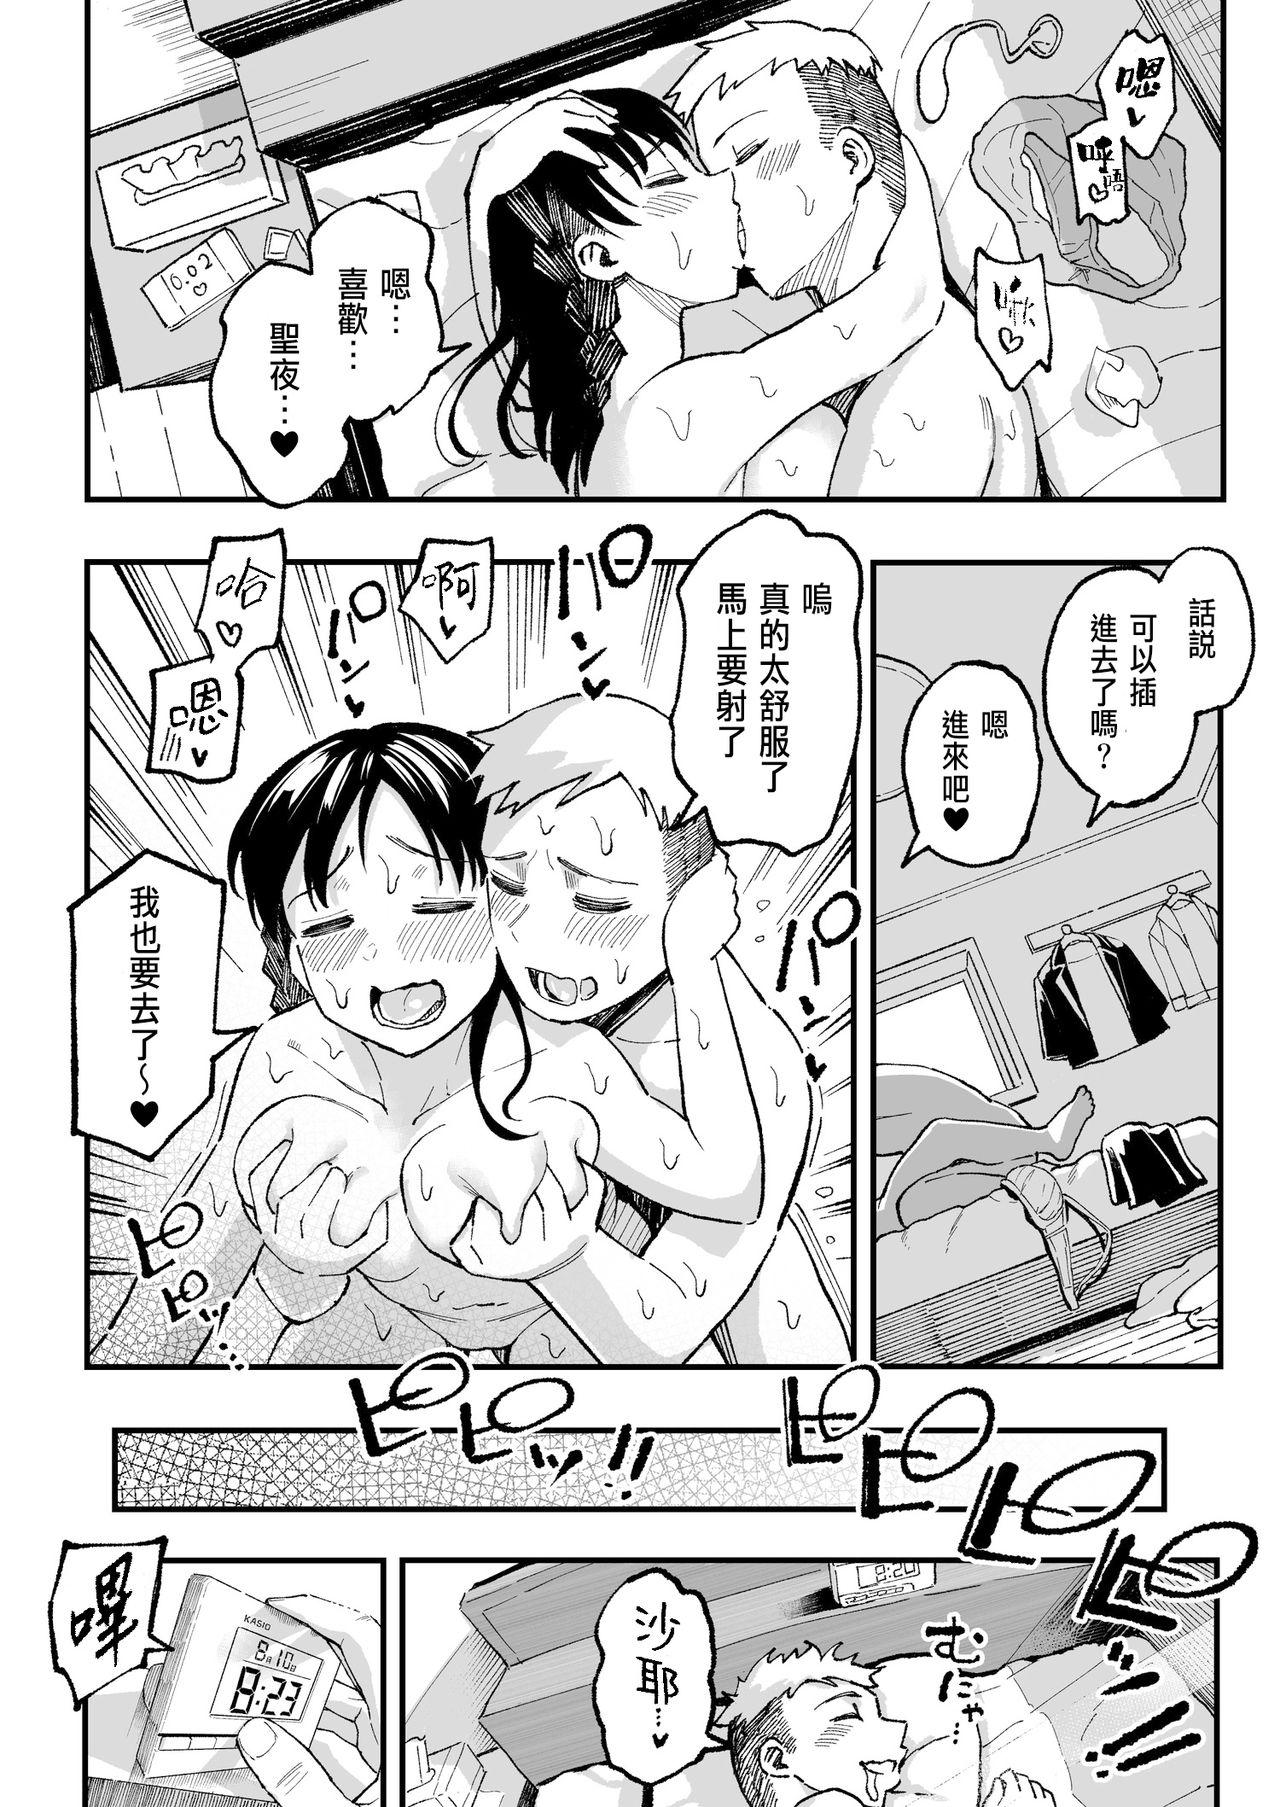 Red Juunengo no Hachigatsu Kimi to. - Original Staxxx - Page 133